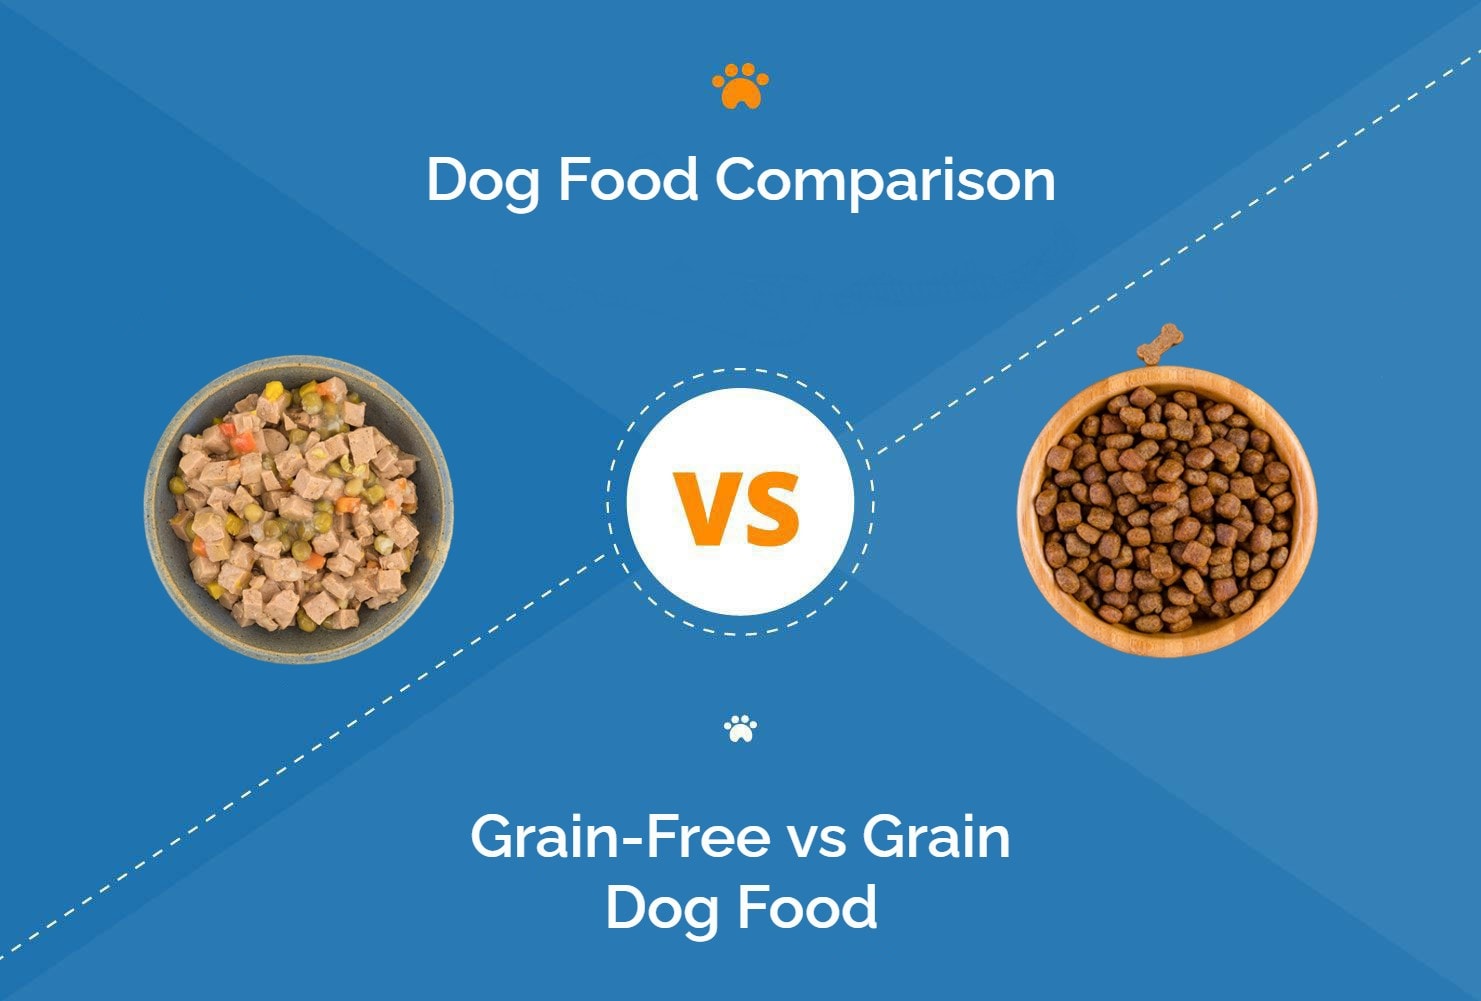 Left: Dog Food (Image Credit: Louella938, Shutterstock) Right: Grain Dog Food (Image Credit: nadisja, Shutterstock)